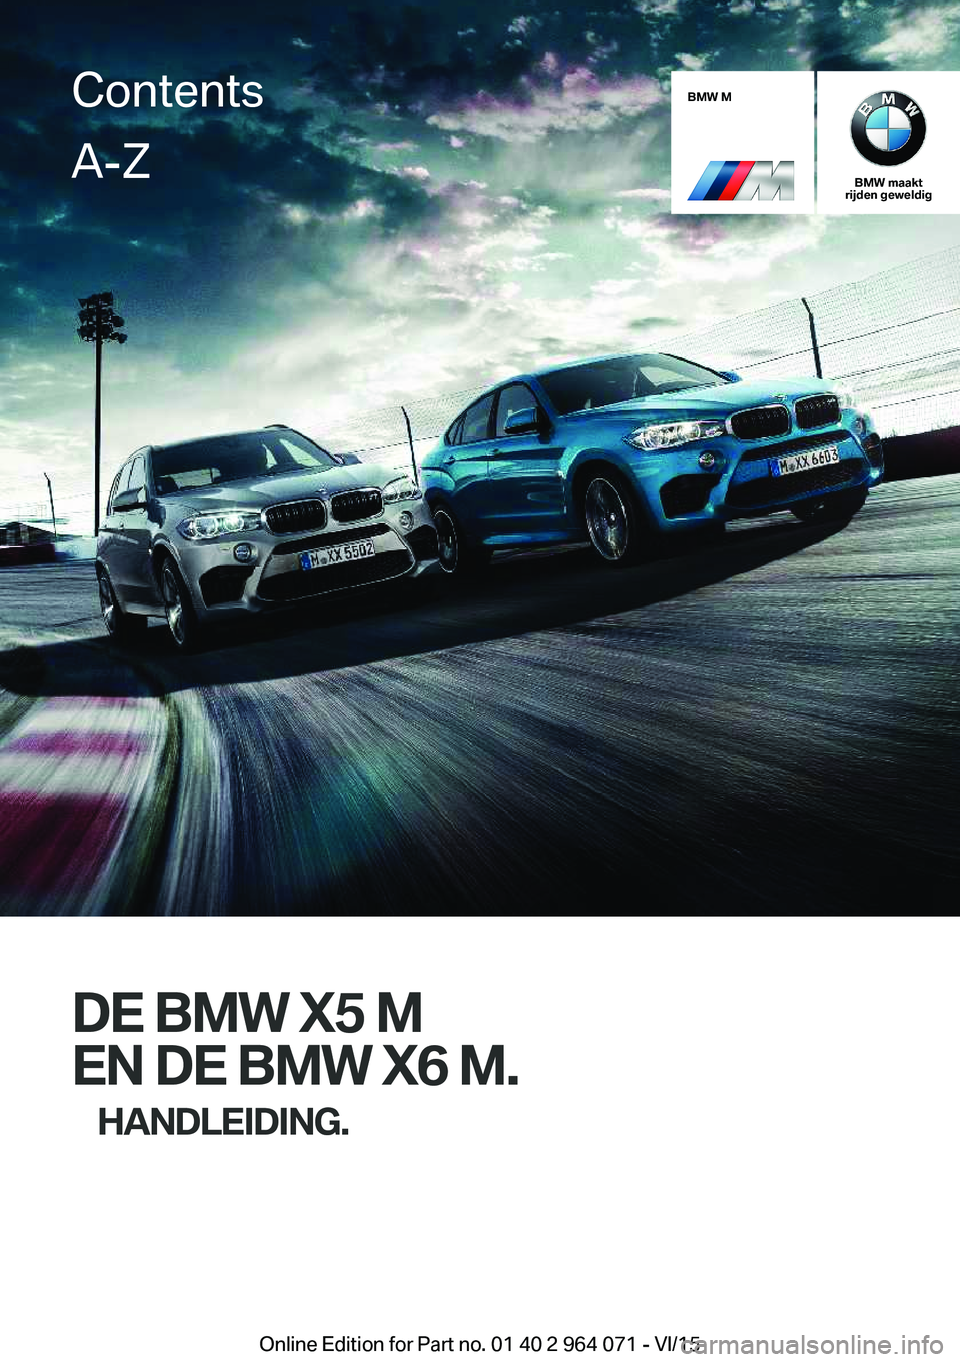 BMW X6 M 2016  Instructieboekjes (in Dutch) BMW M
BMW maakt
rijden geweldig
DE BMW X5 M
EN DE BMW X6 M. HANDLEIDING.
ContentsA-Z
Online Edition for Part no. 01 40 2 964 071 - VI/15   